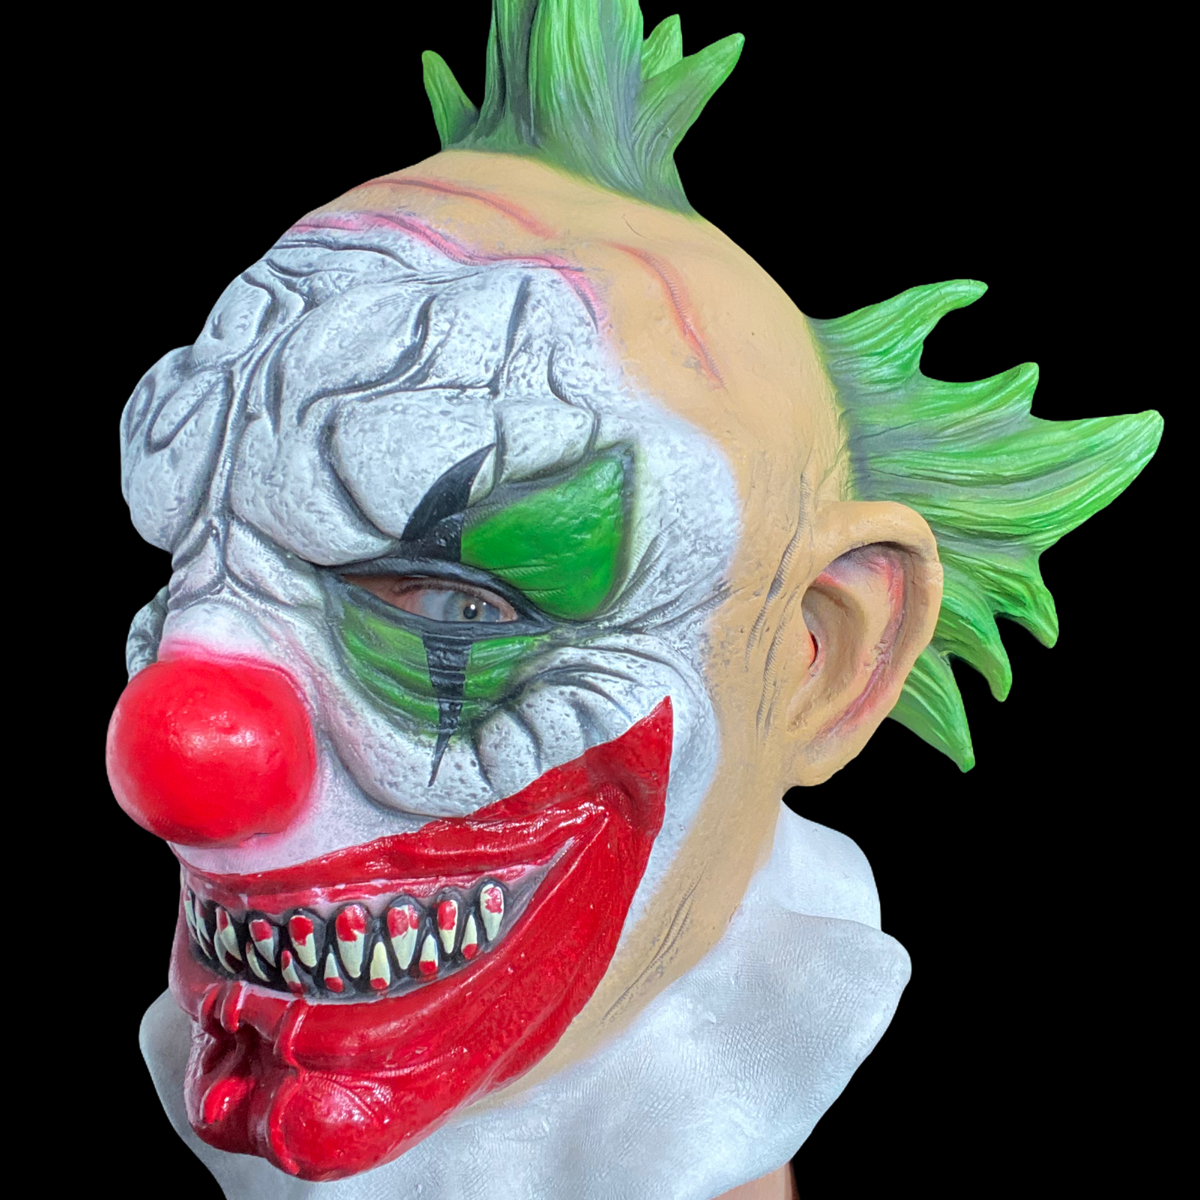 Masque de clown de carnaval maléfique